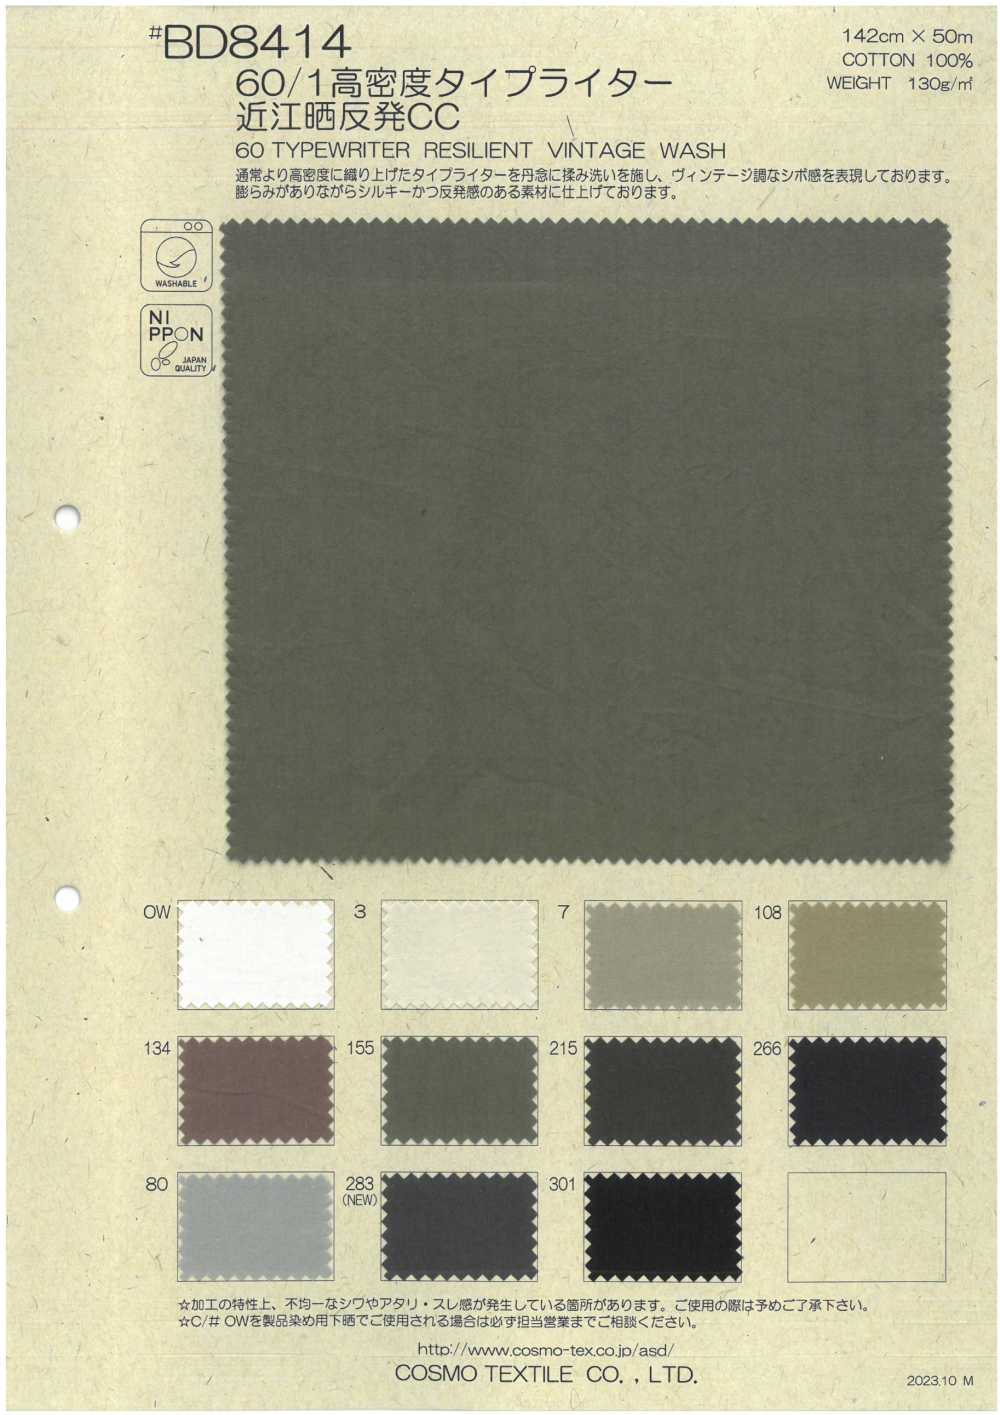 BD8414 Rouleau De Tissu Pour Machine à écrire Haute Densité 60/1 Omi Blanchi CC[Fabrication De Textile] COSMO TEXTILE